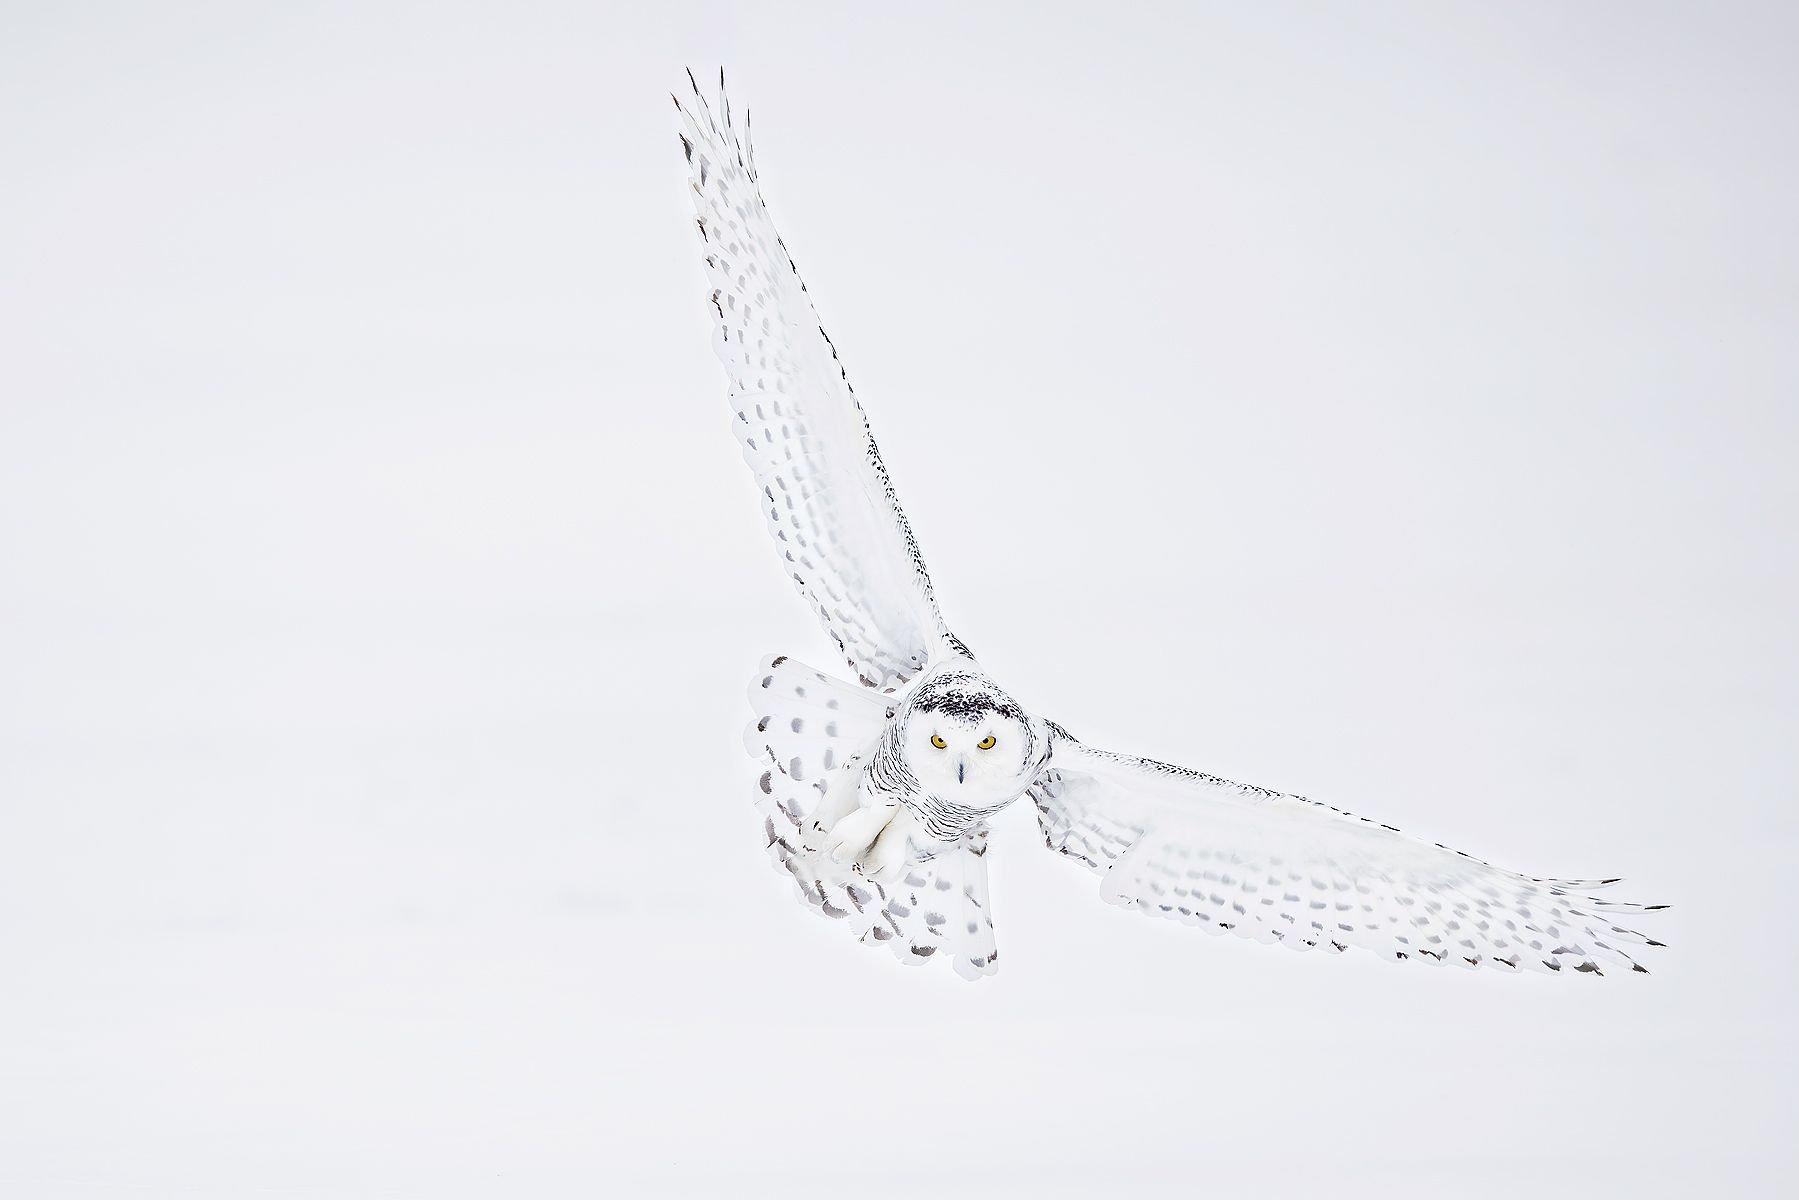 Snowy-owl-wings-wide_F0A5349.jpg